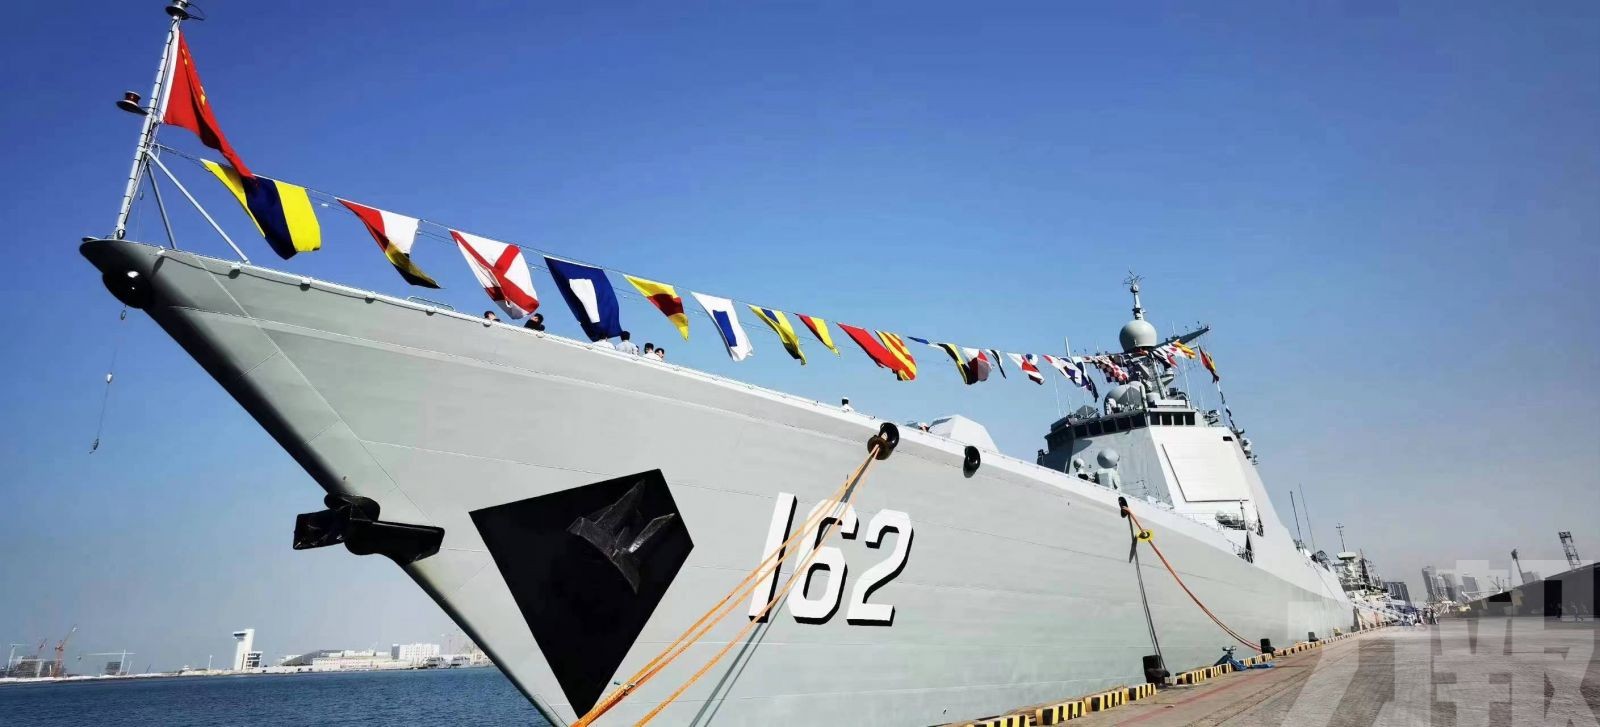 中國派海軍艦艇協助撤離當地中國人員